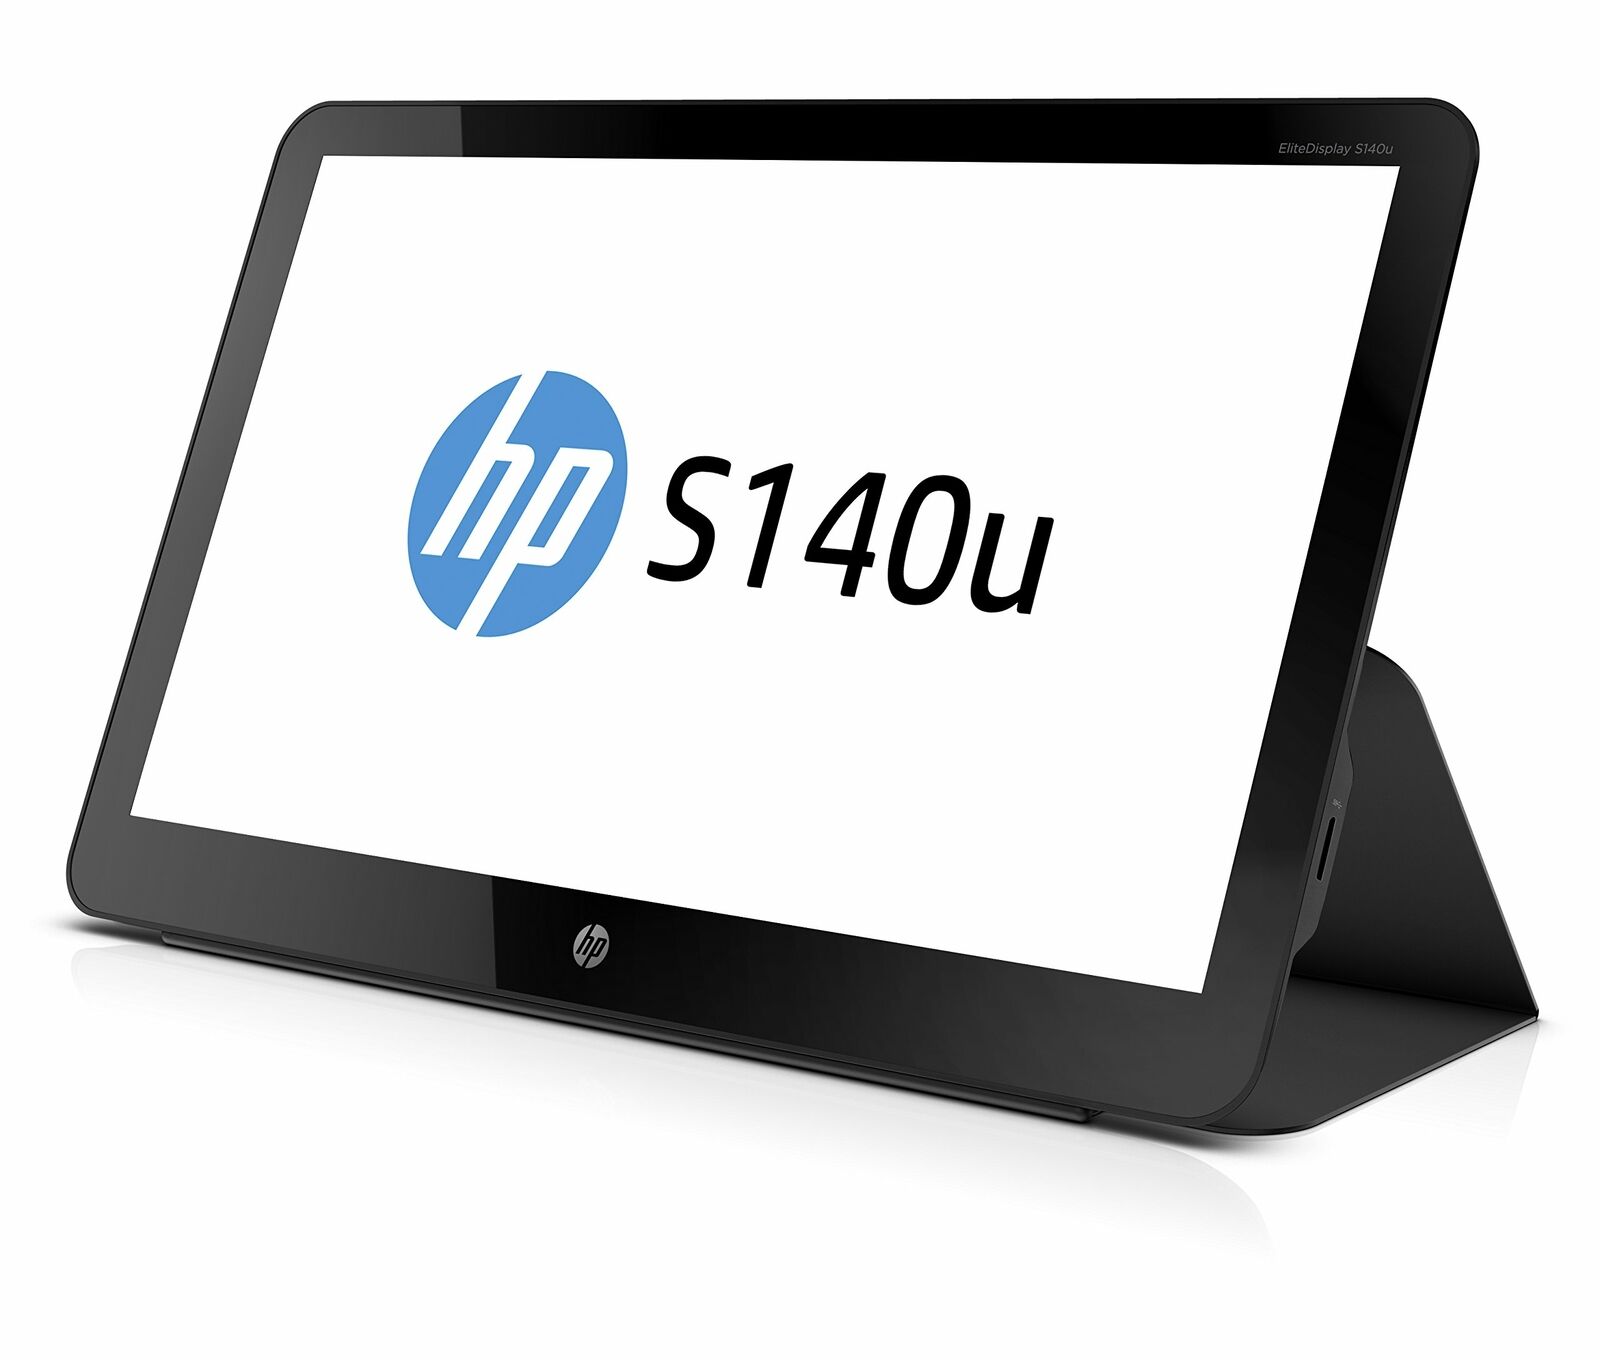 HP ELiteDisplay G8R65A8#ABA 14-Inch Screen LED-Lit Monitor